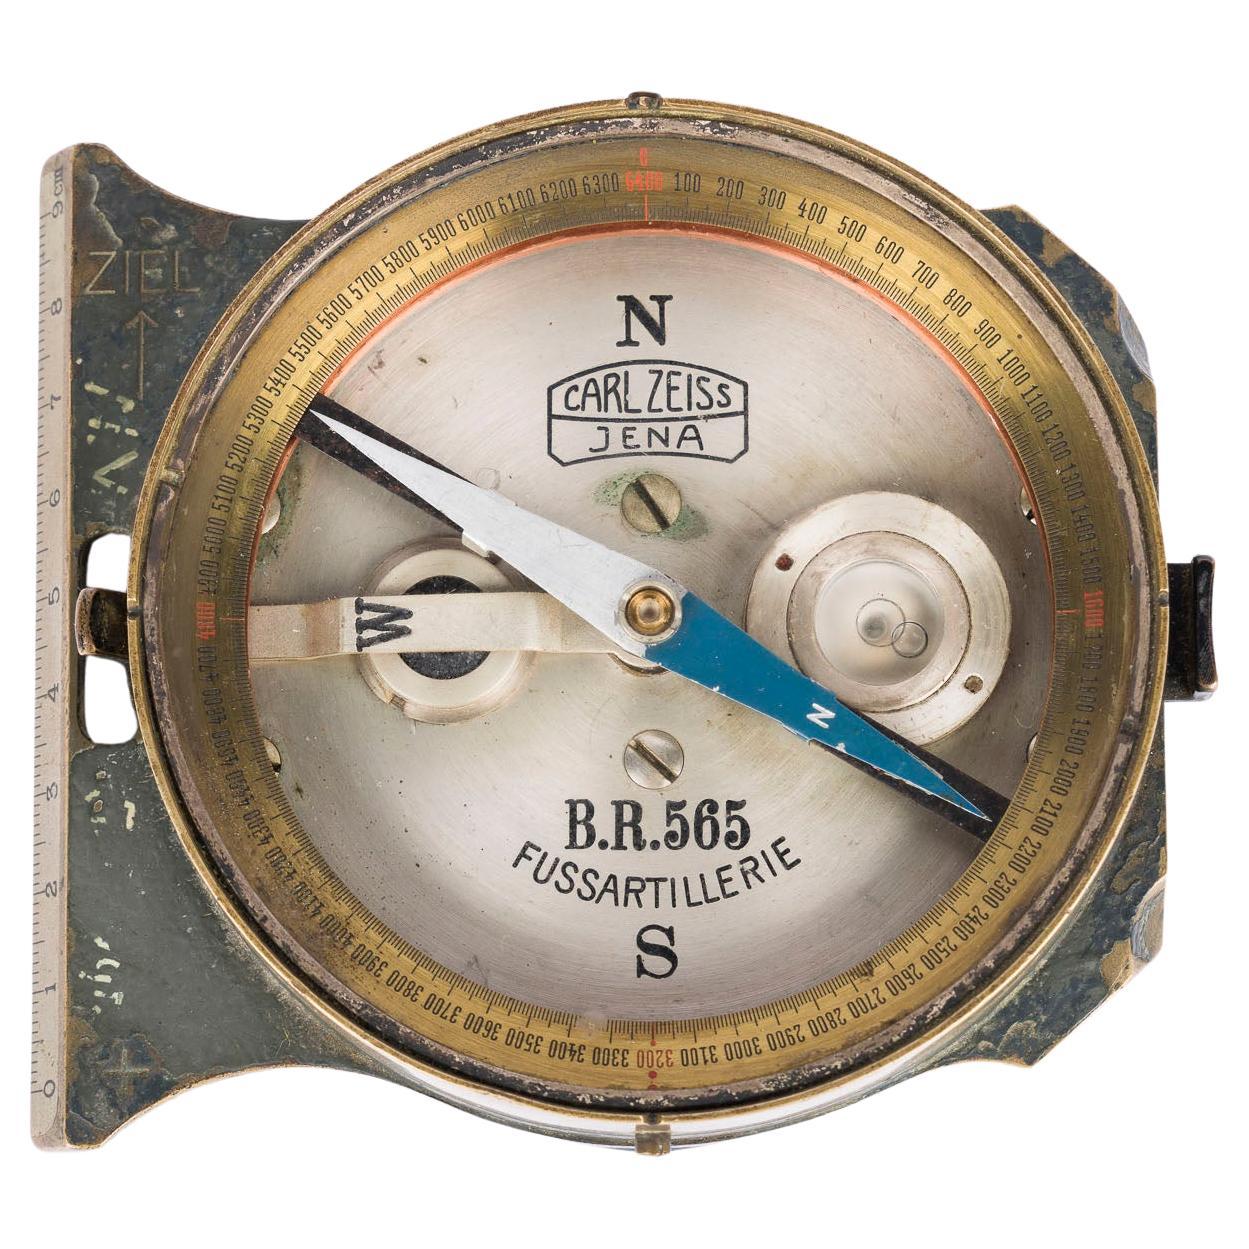 Carl Zeiss Jena „Fussartillerie“ Artillerie-Kompass aus Messing aus dem Ersten Weltkrieg